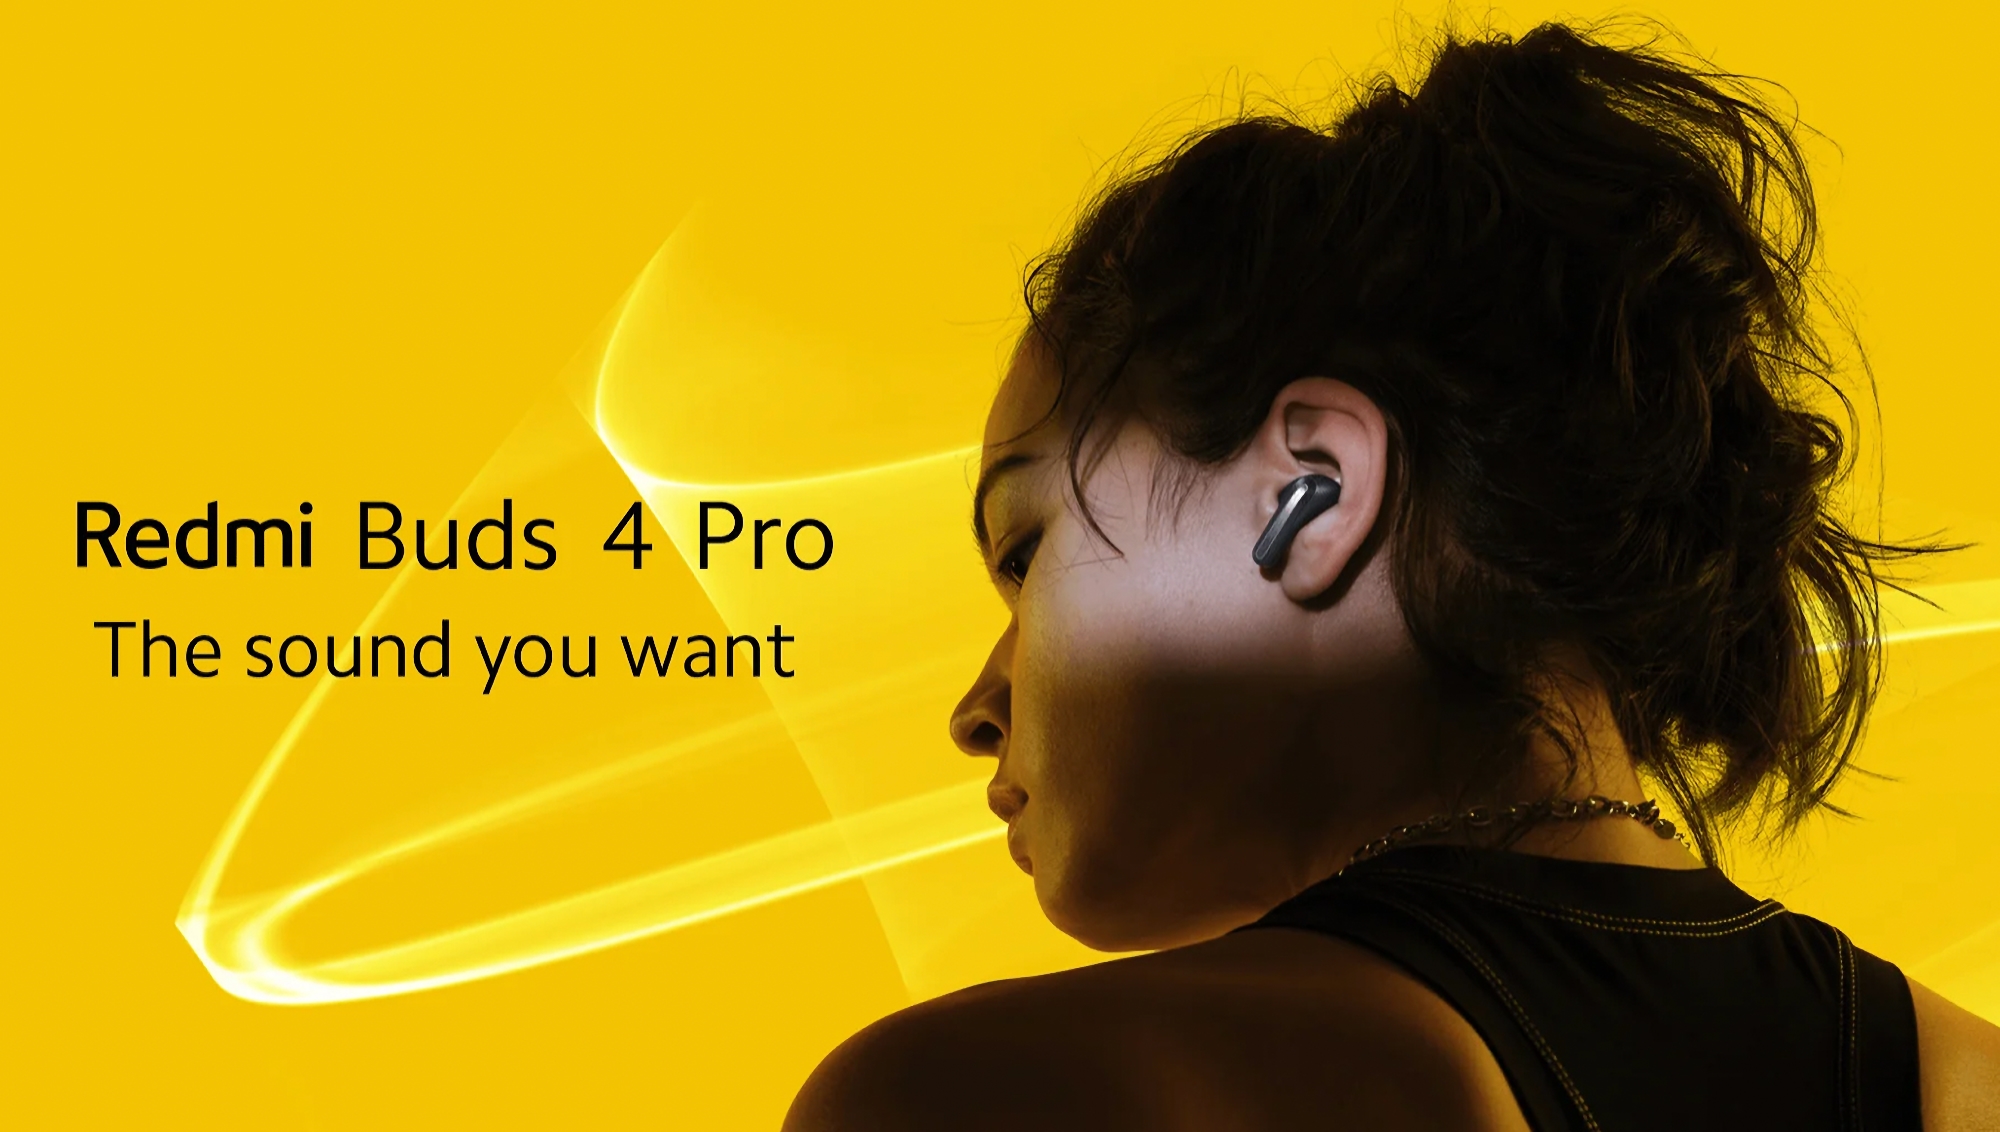 Les Redmi Buds 4 Pro dévoilés en Europe : Des écouteurs TWS avec ANC, protection IP54 et autonomie jusqu'à 36 heures pour 99 euros